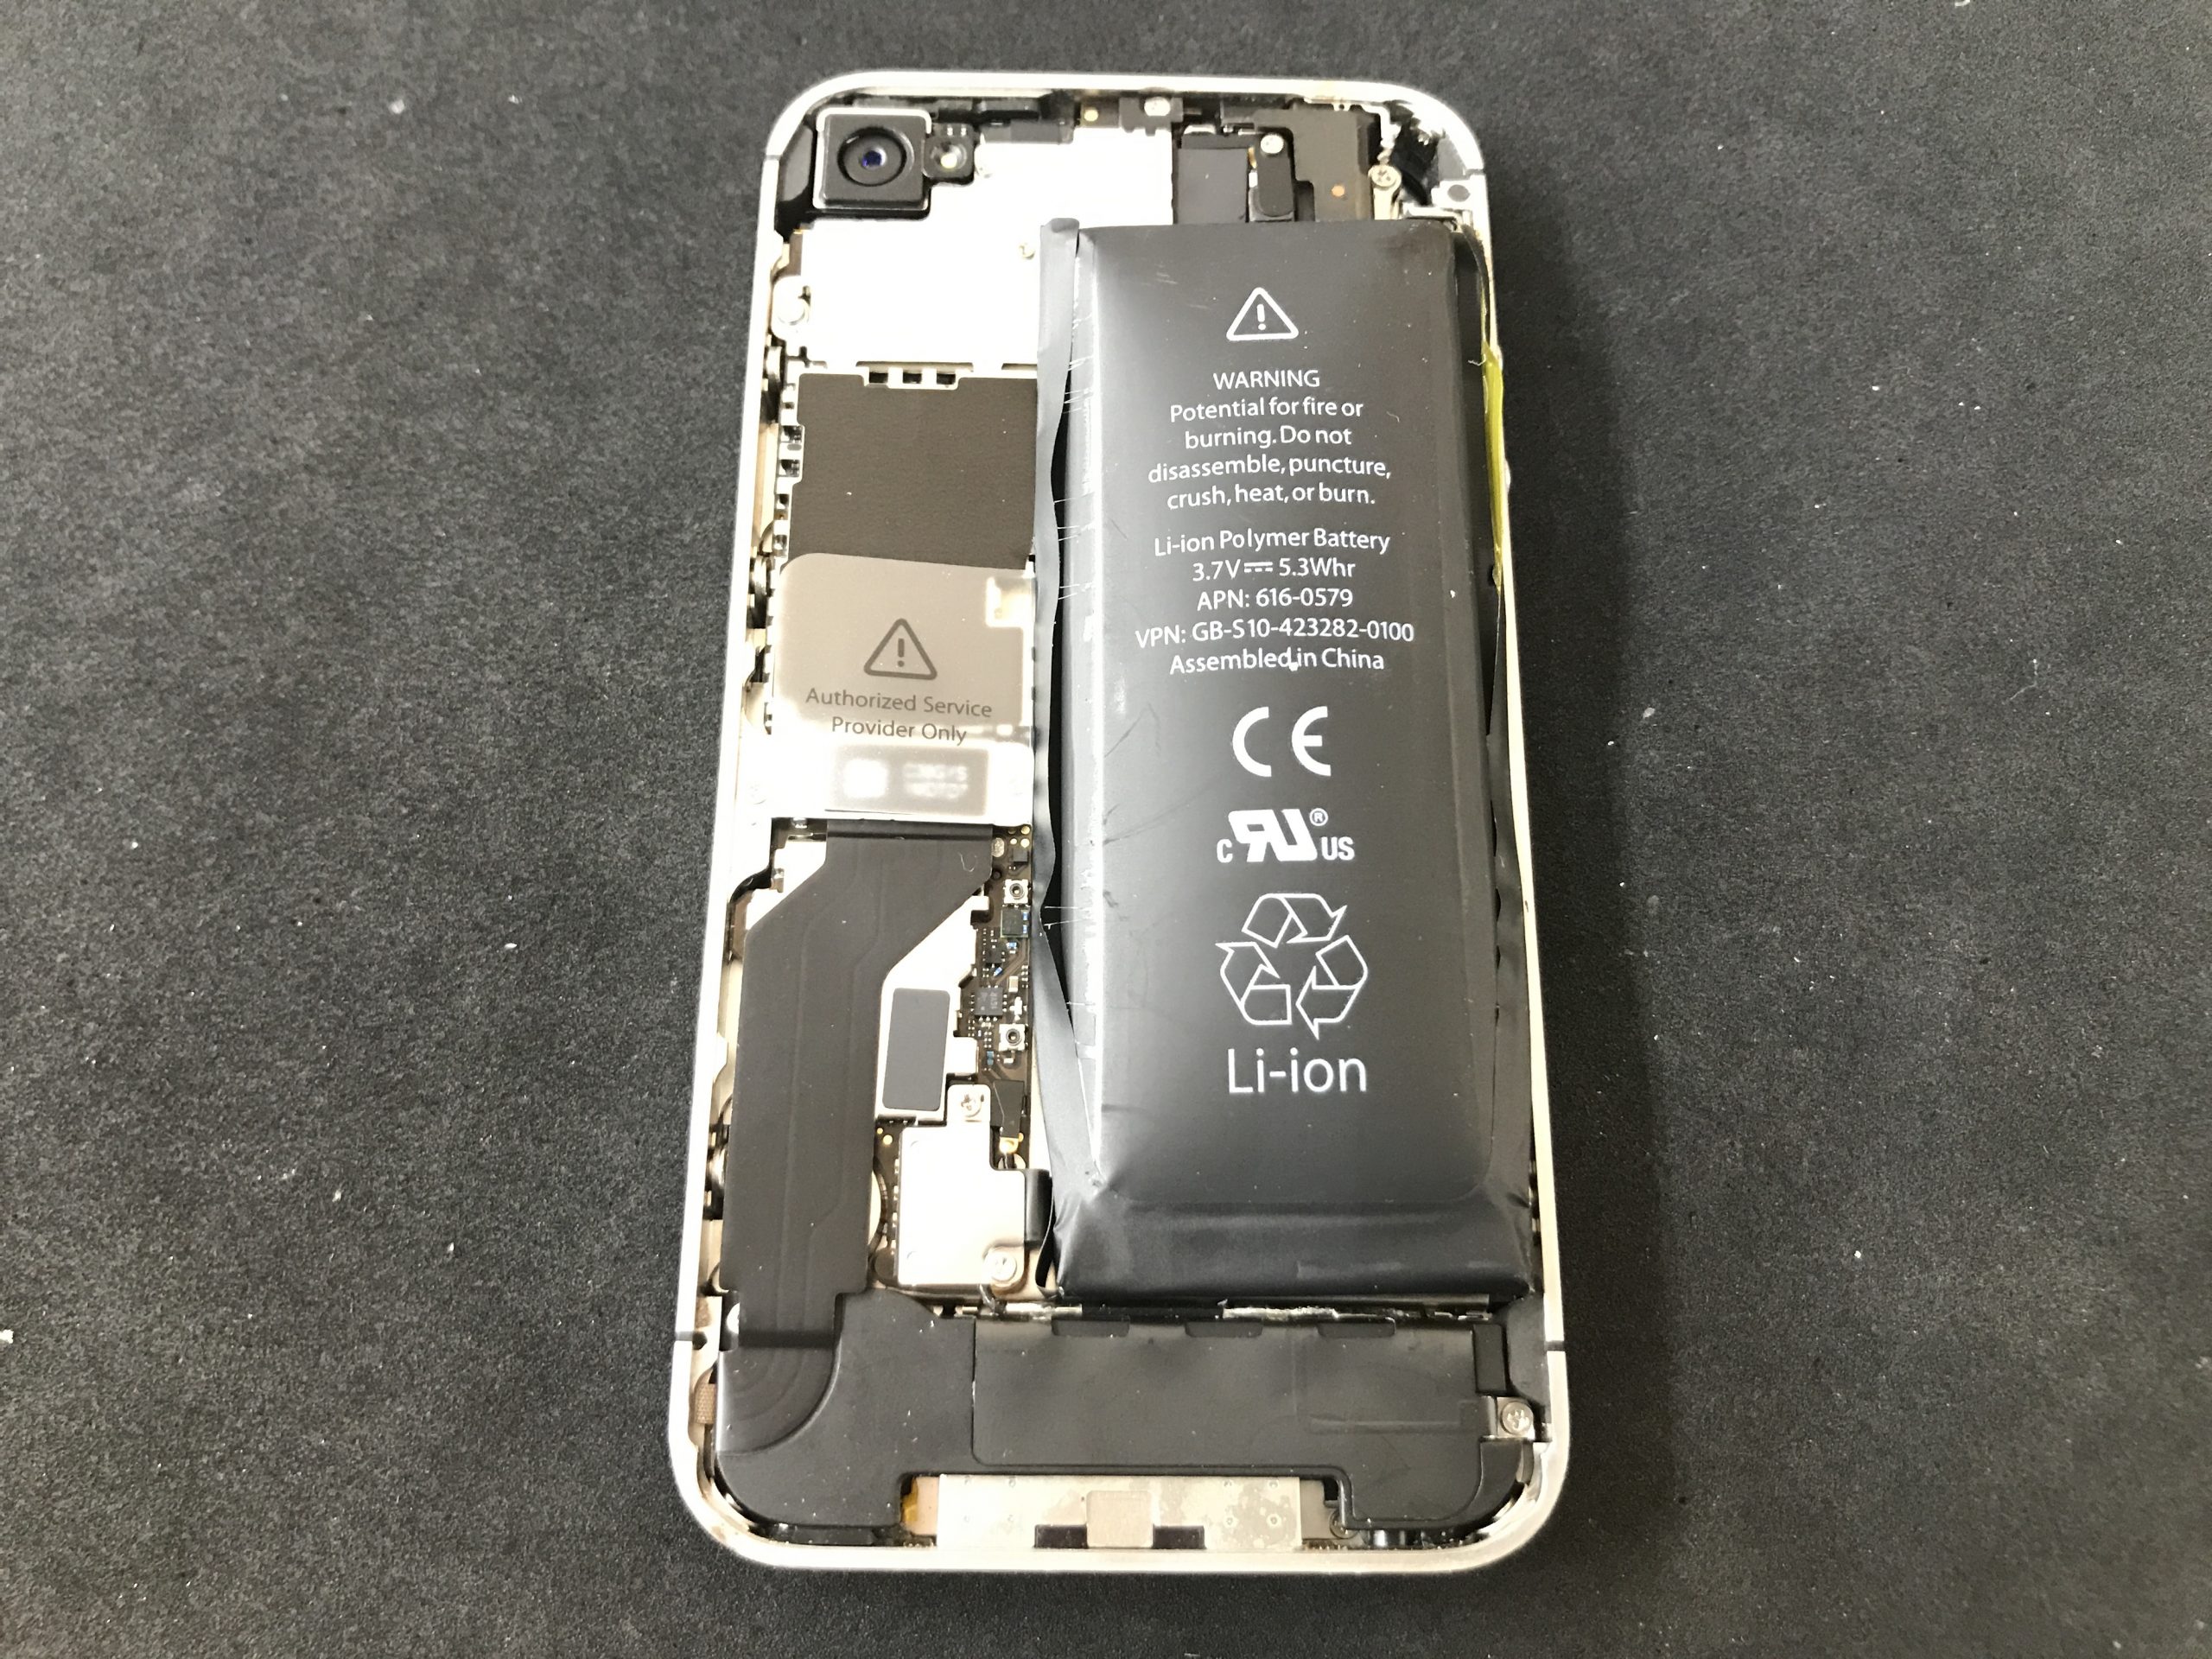 【皆さんご注意⚠️】バッテリーはお早めに交換を！〜iPhone5 のバッテリーを救出しました〜